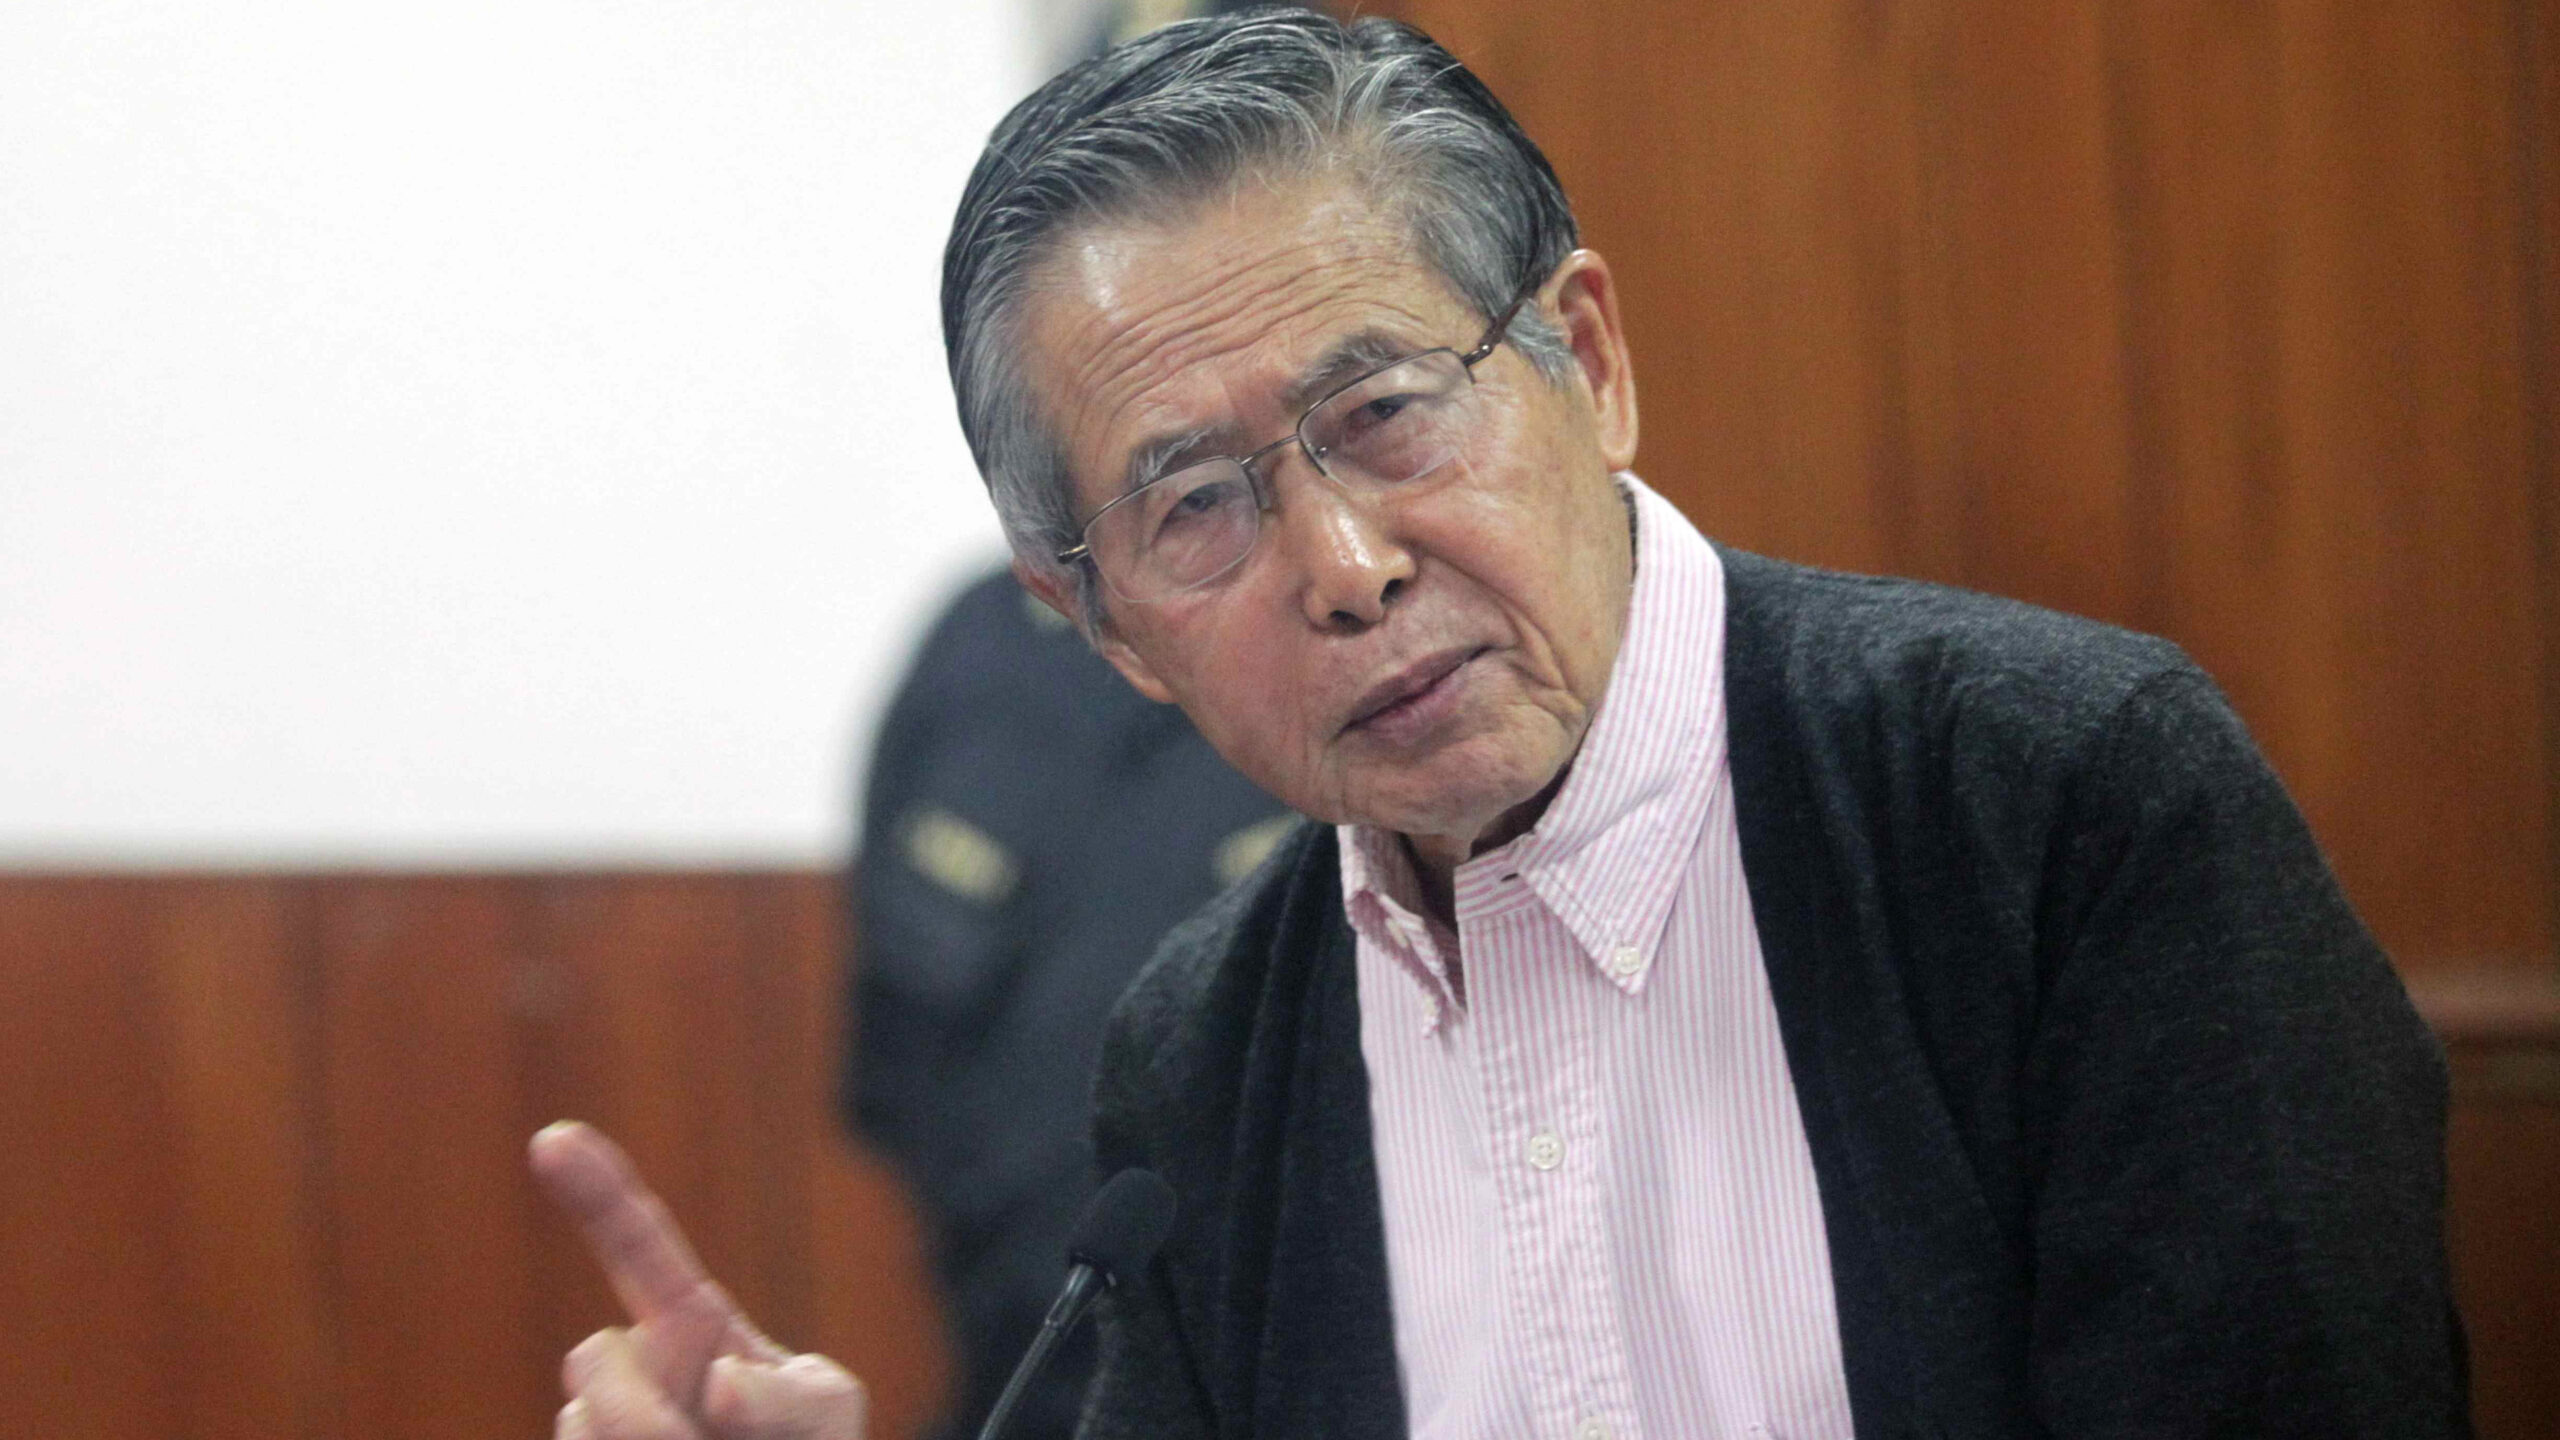 Hospitalizan al expresidente Fujimori, quien cumple una condena de 25 años de cárcel en Perú